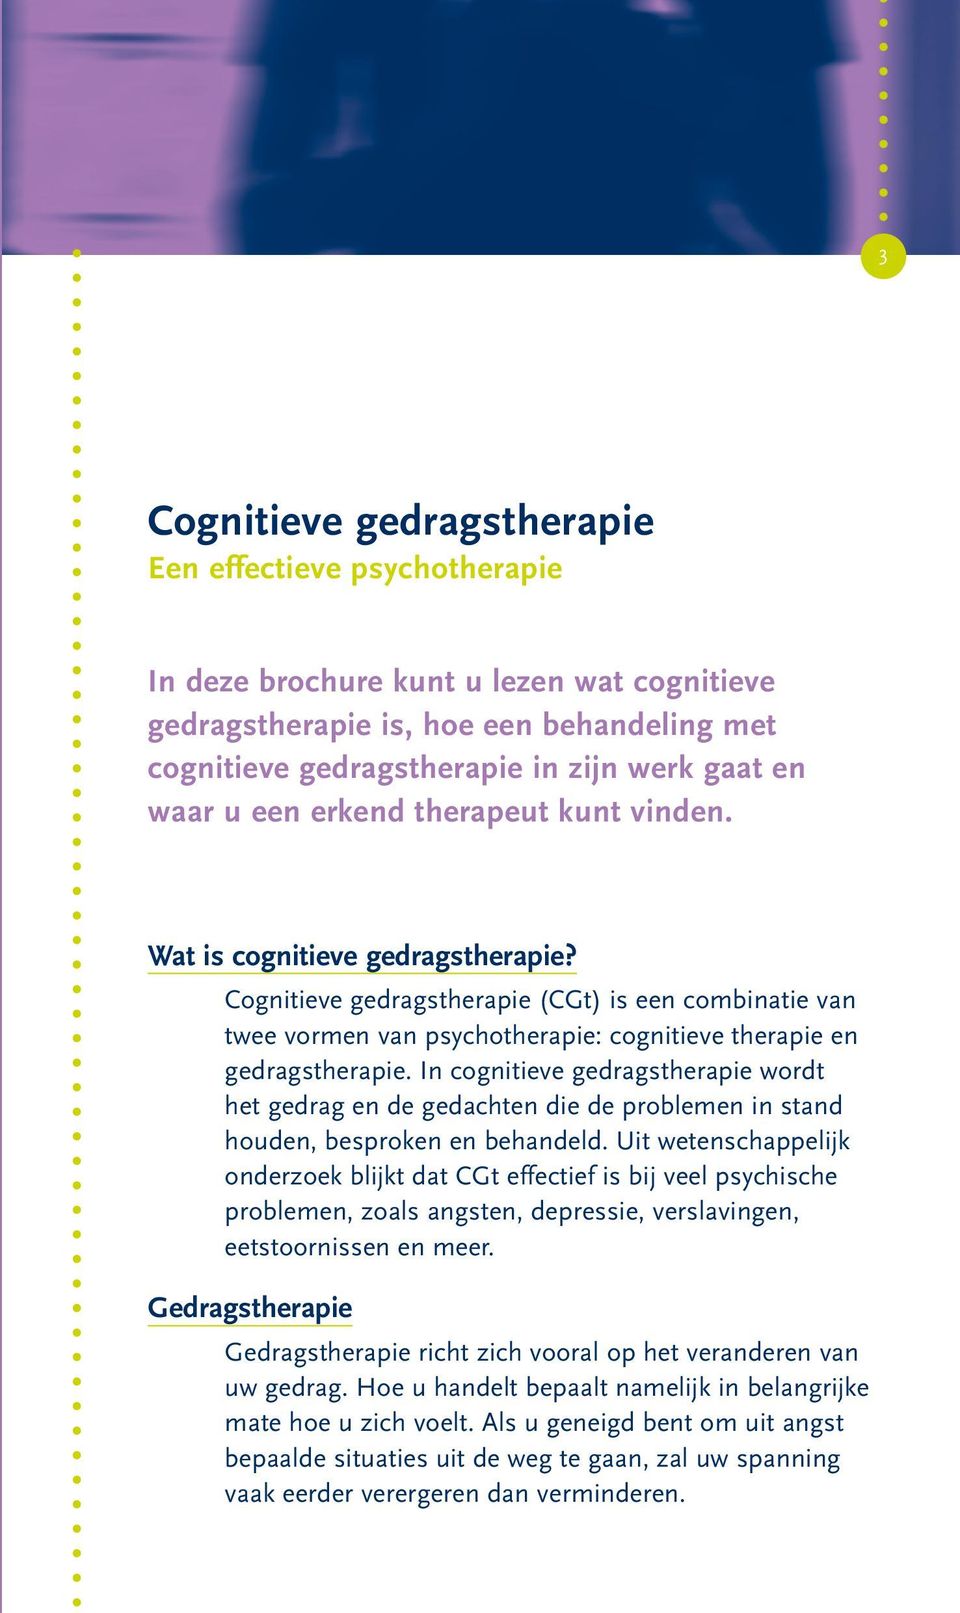 Cognitieve gedragstherapie (CGt) is een combinatie van twee vormen van psychotherapie: cognitieve therapie en gedragstherapie.